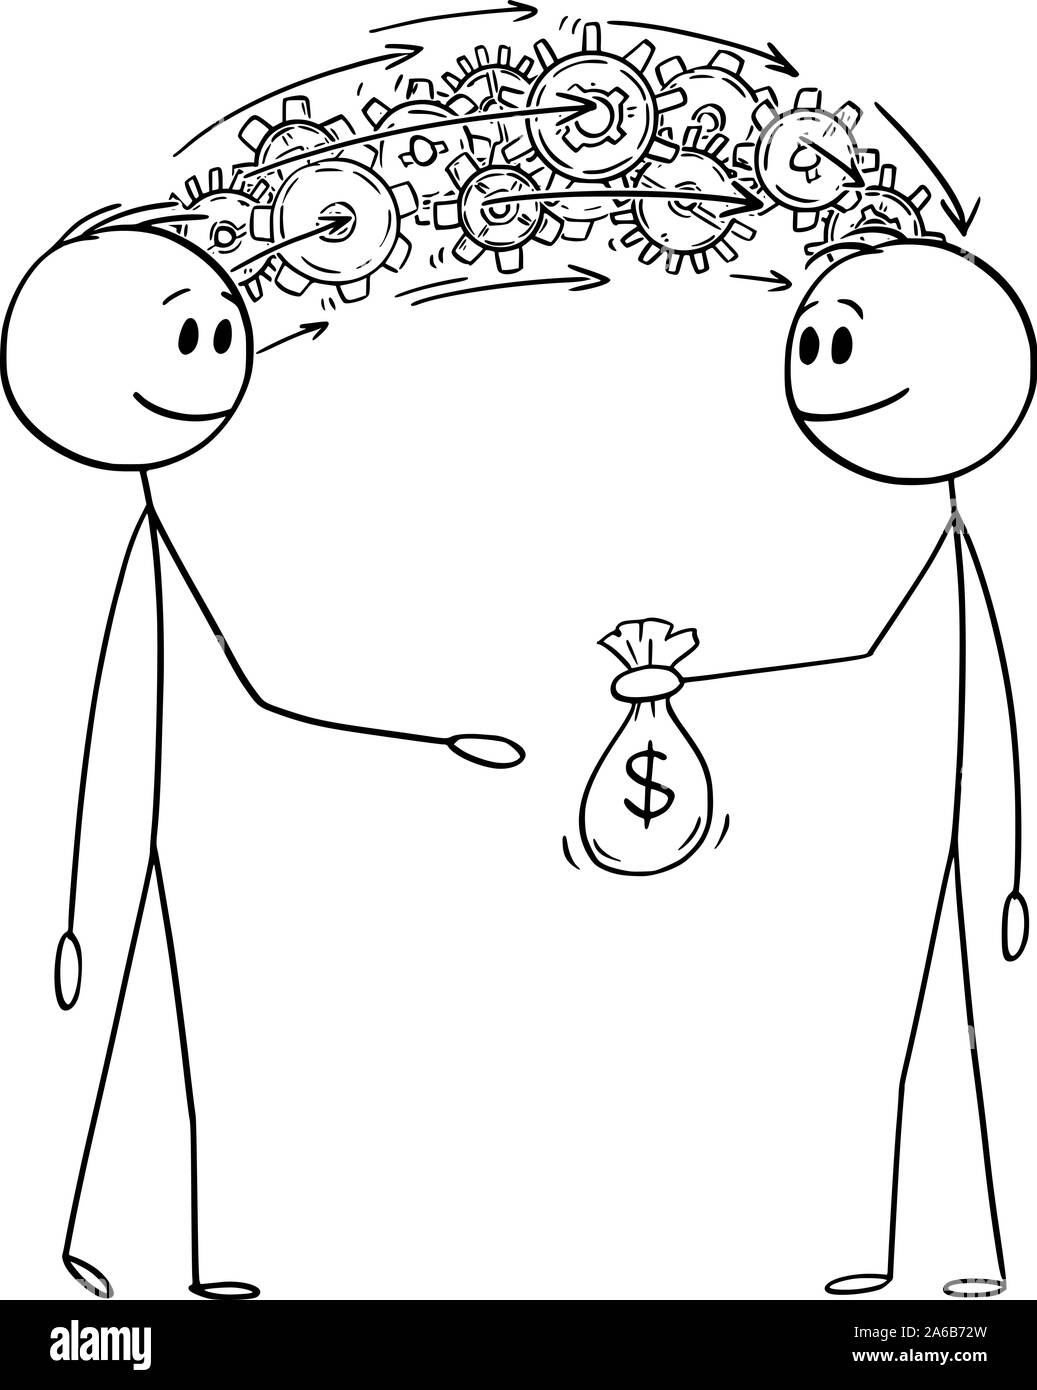 Vector cartoon stick figura disegno illustrazione concettuale dell'uomo imprenditore o condividere la sua conoscenza e informazione per denaro. Illustrazione Vettoriale